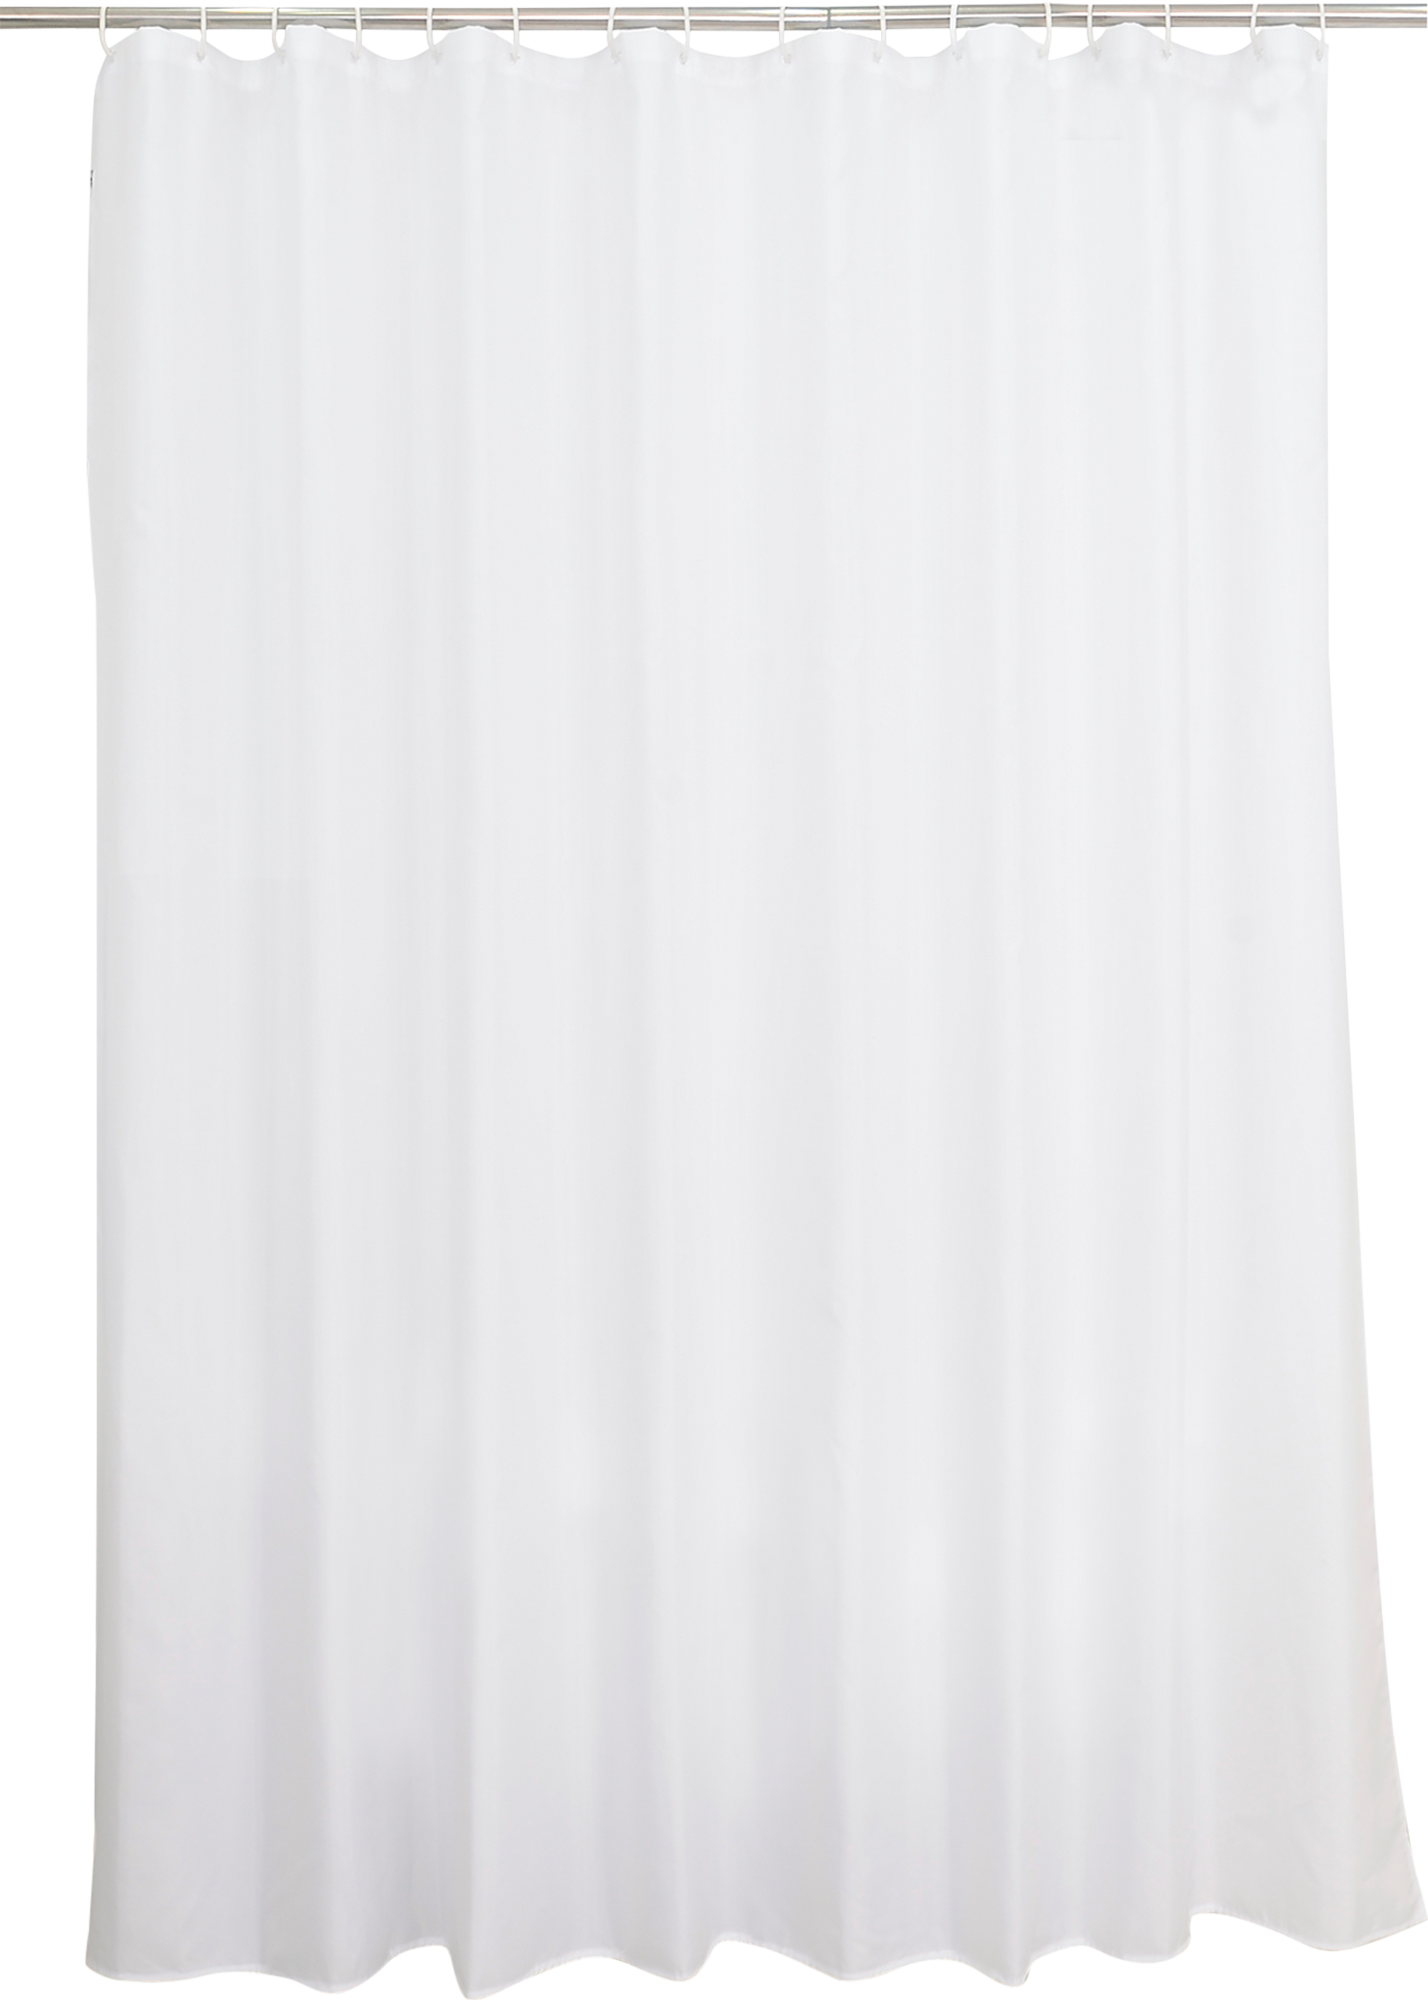 Cortina de baño happy blanco 240x200 cm